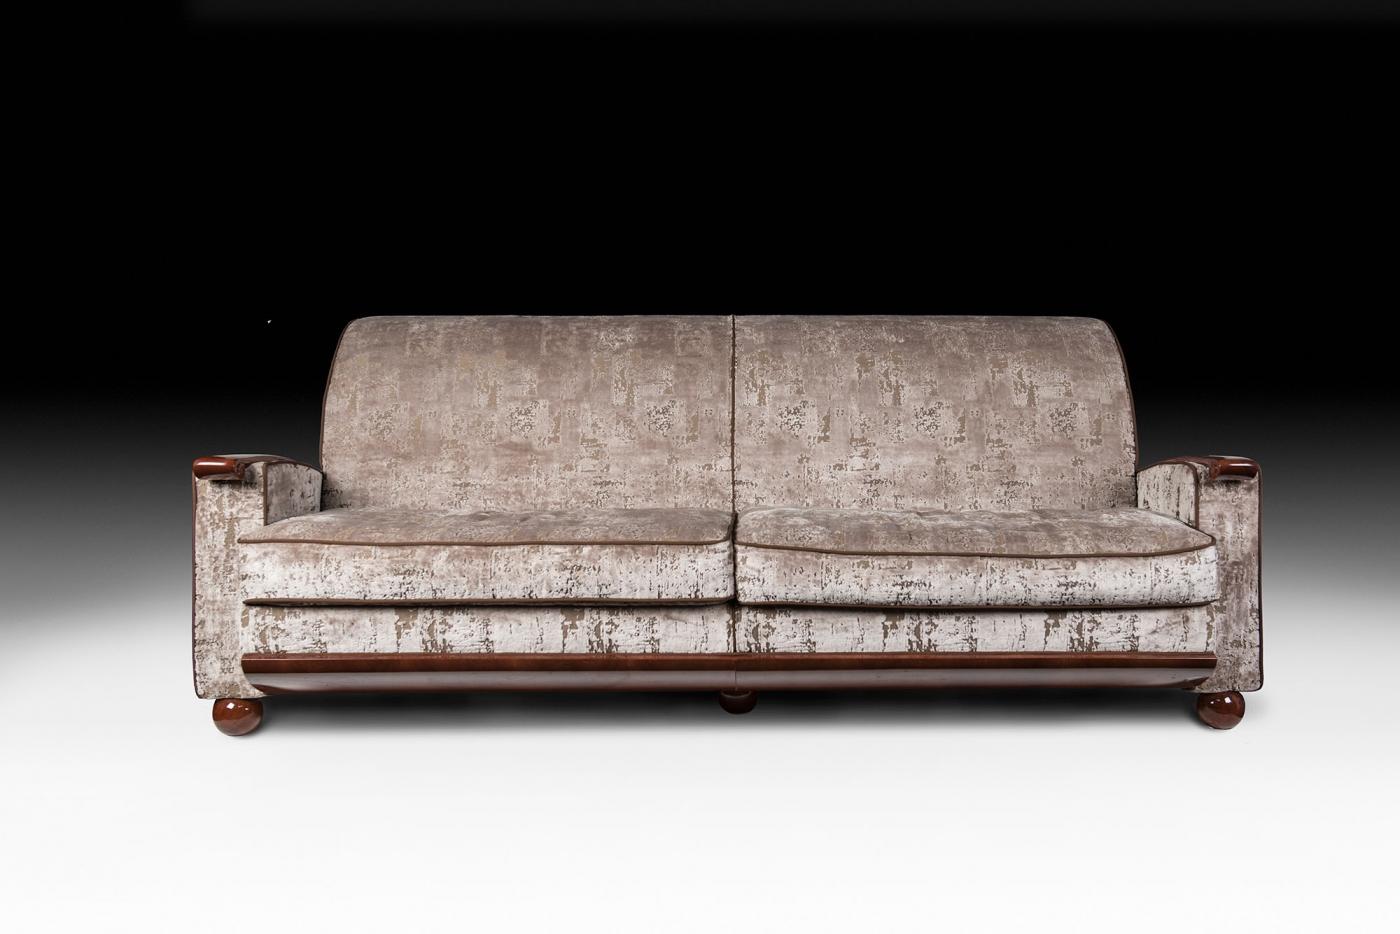 VG-Möbel stehen für Luxus im Sinne von Exklusivität, Auszeichnung und hoher Qualität. Sie sind das Ergebnis eines anspruchsvollen und exklusiven Designs mit einer starken Identität. Sie sind das Ergebnis der sorgfältigen Beachtung der typischen